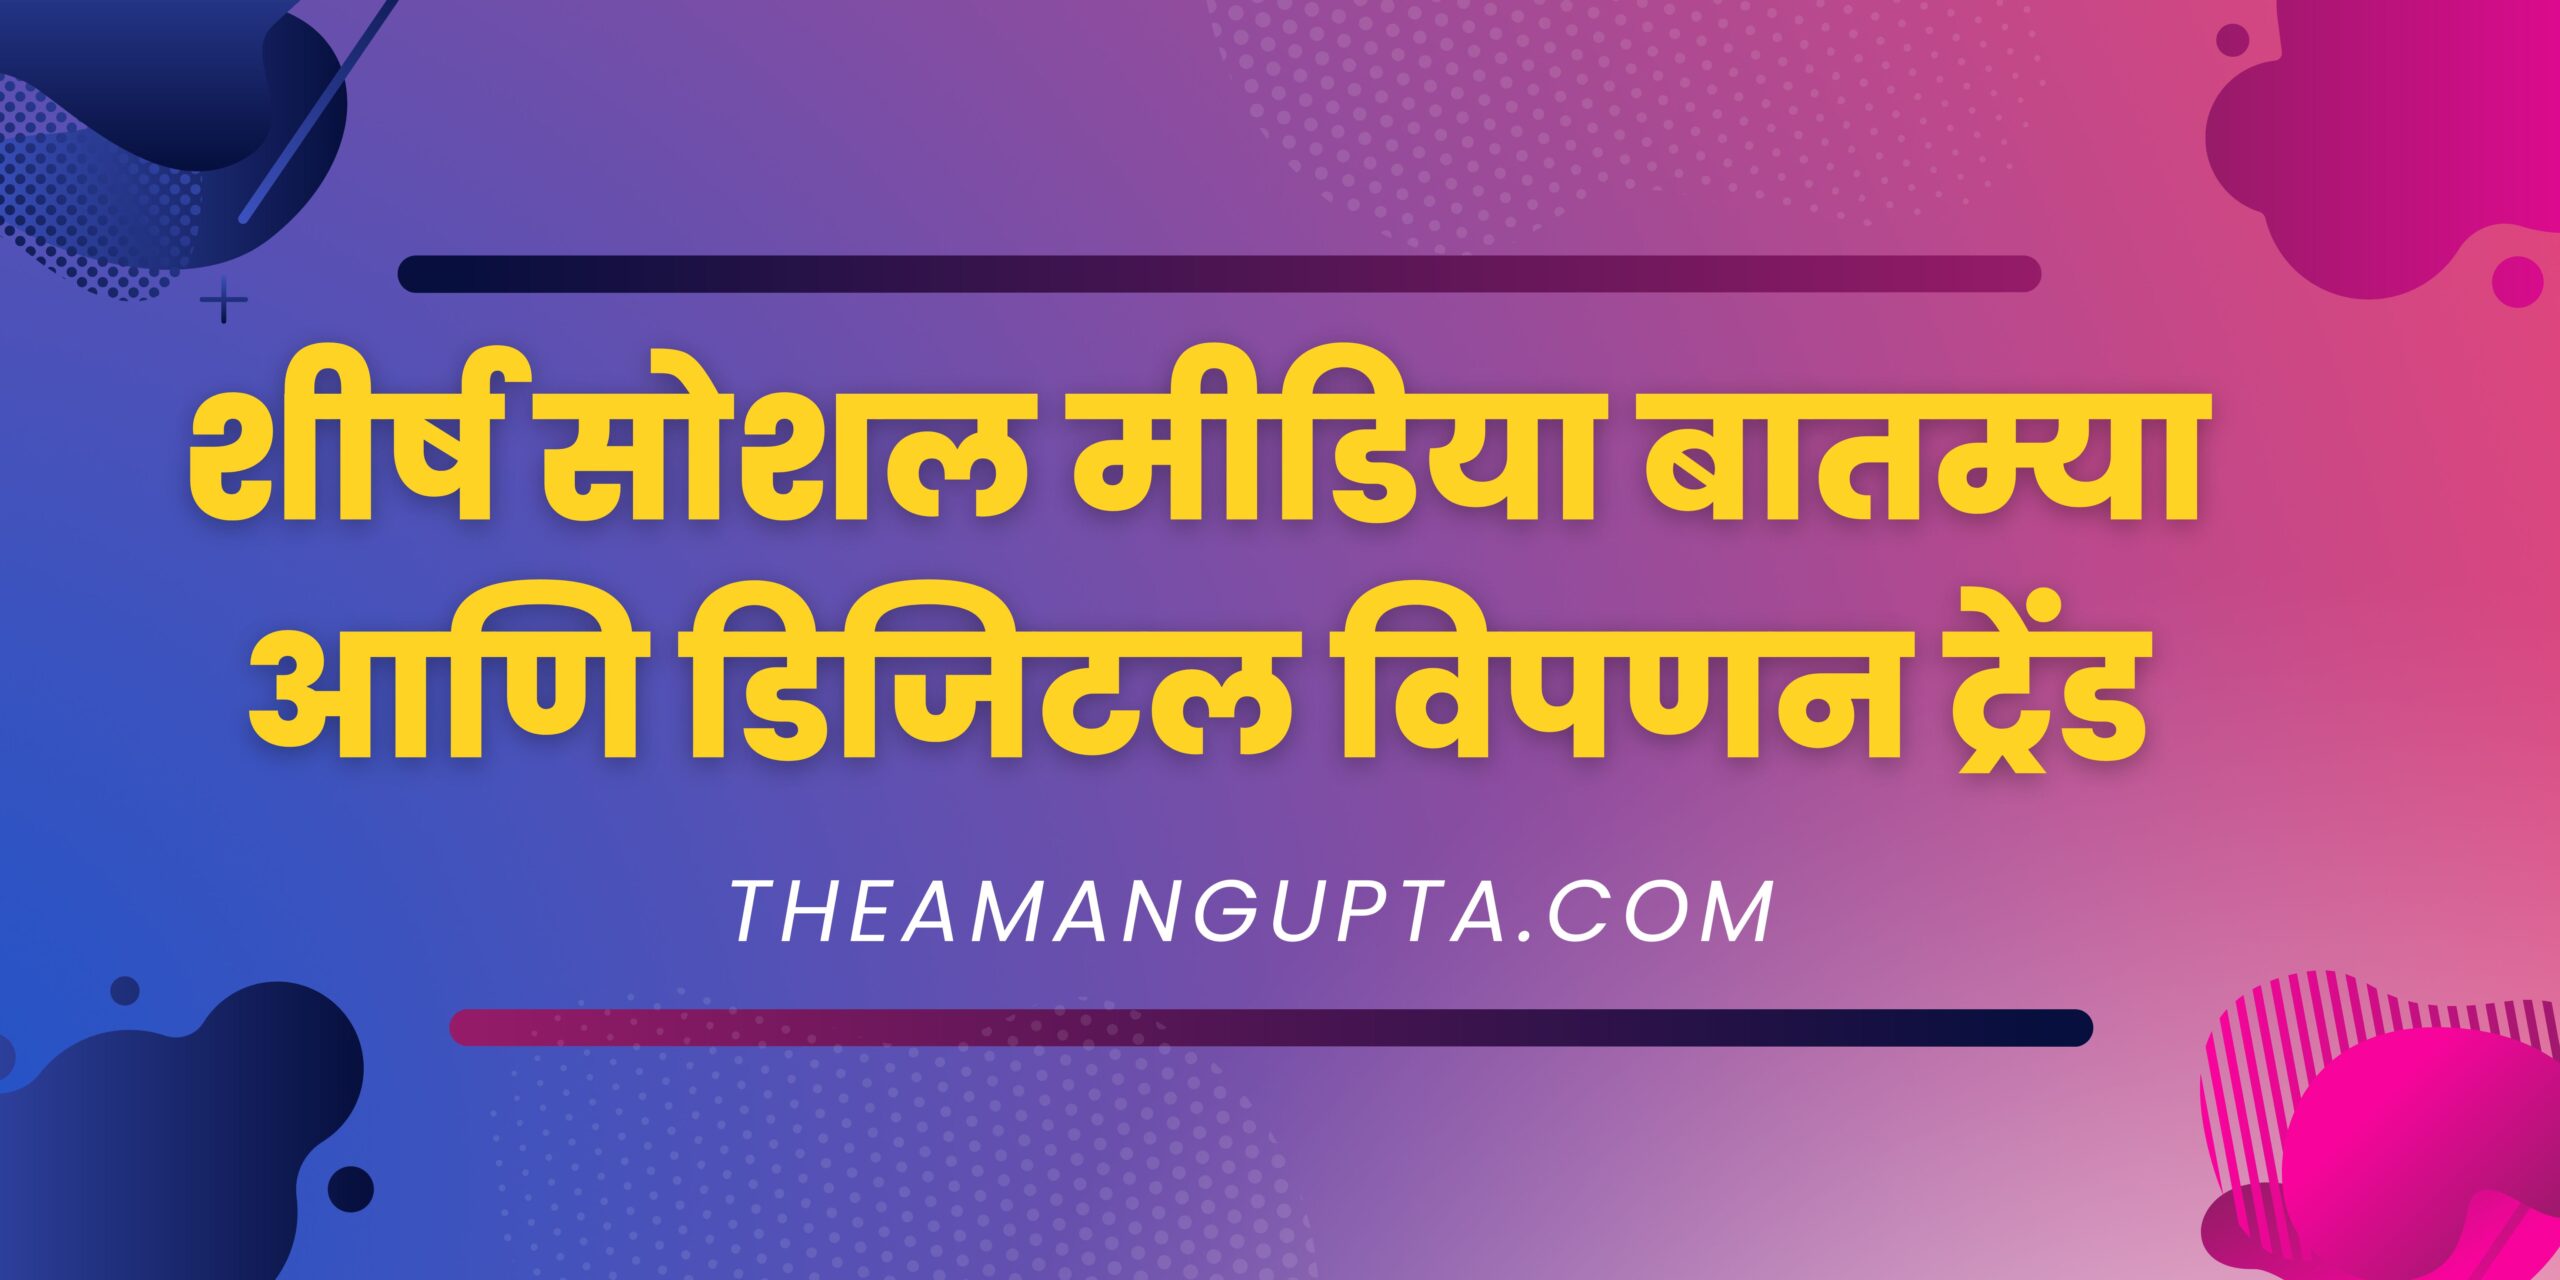 शीर्ष सोशल मीडिया बातम्या आणि डिजिटल विपणन ट्रेंड|शीर्ष सोशल मीडिया बातम्या आणि डिजिटल विपणन ट्रेंड|Theamangupta|Theamangupta